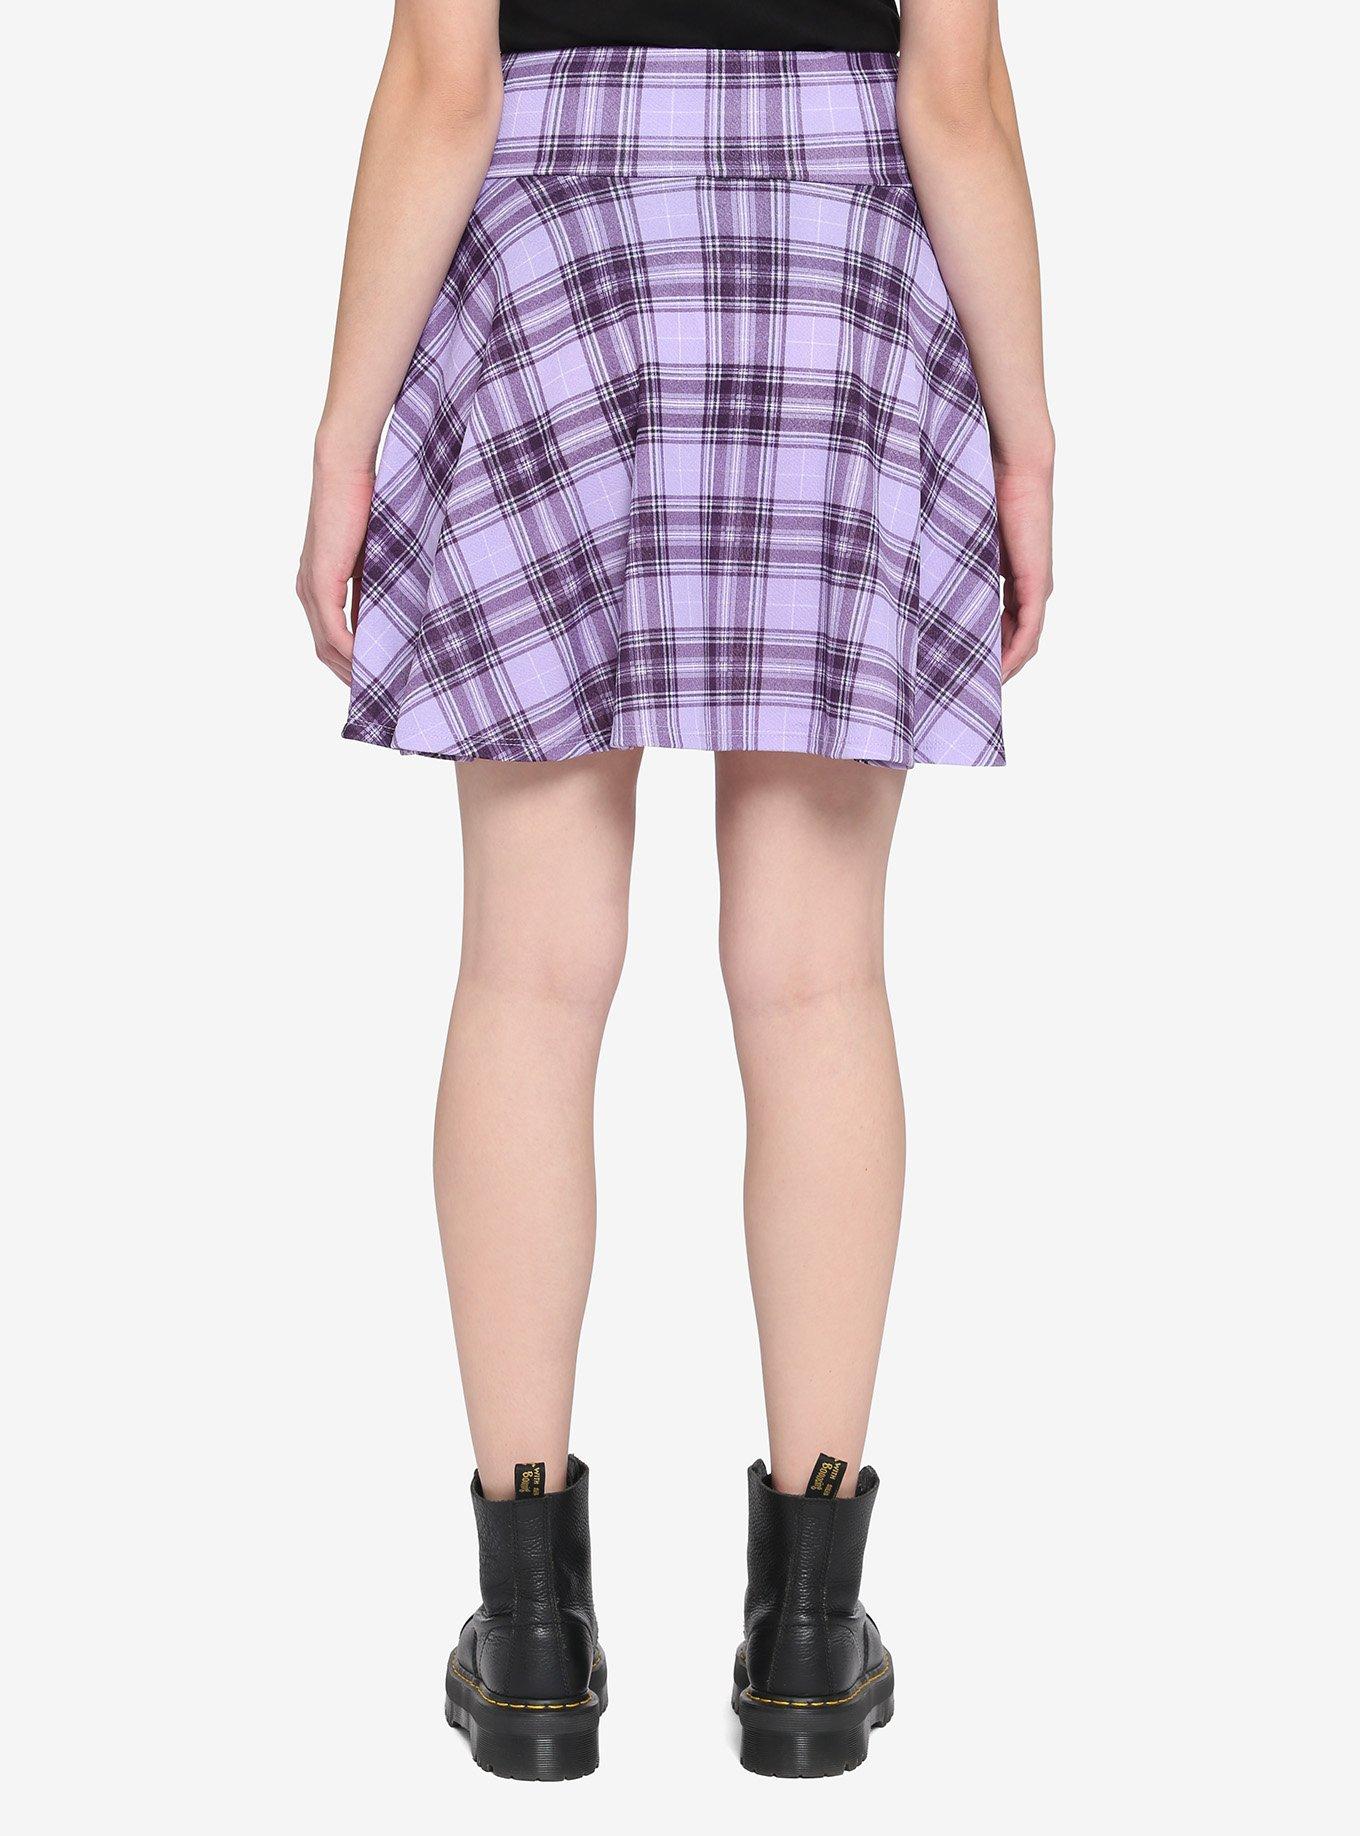 Purple Plaid Multi Lace-Up Yoke Skirt, PLAID - MULTI, alternate